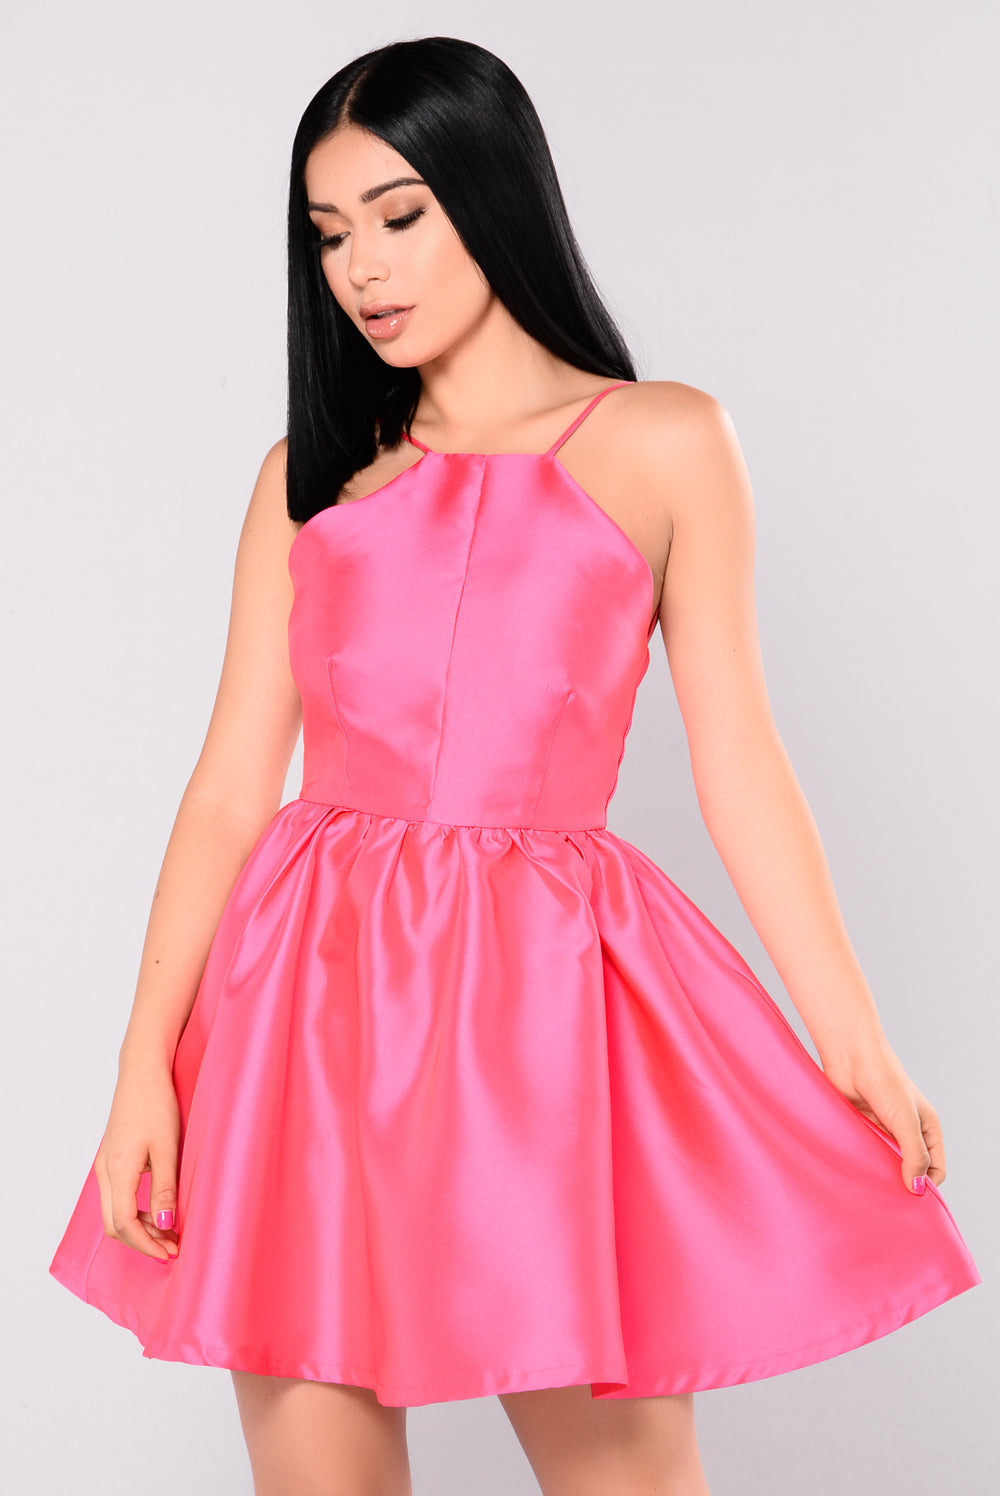 Buttercup Satin Dress Pink